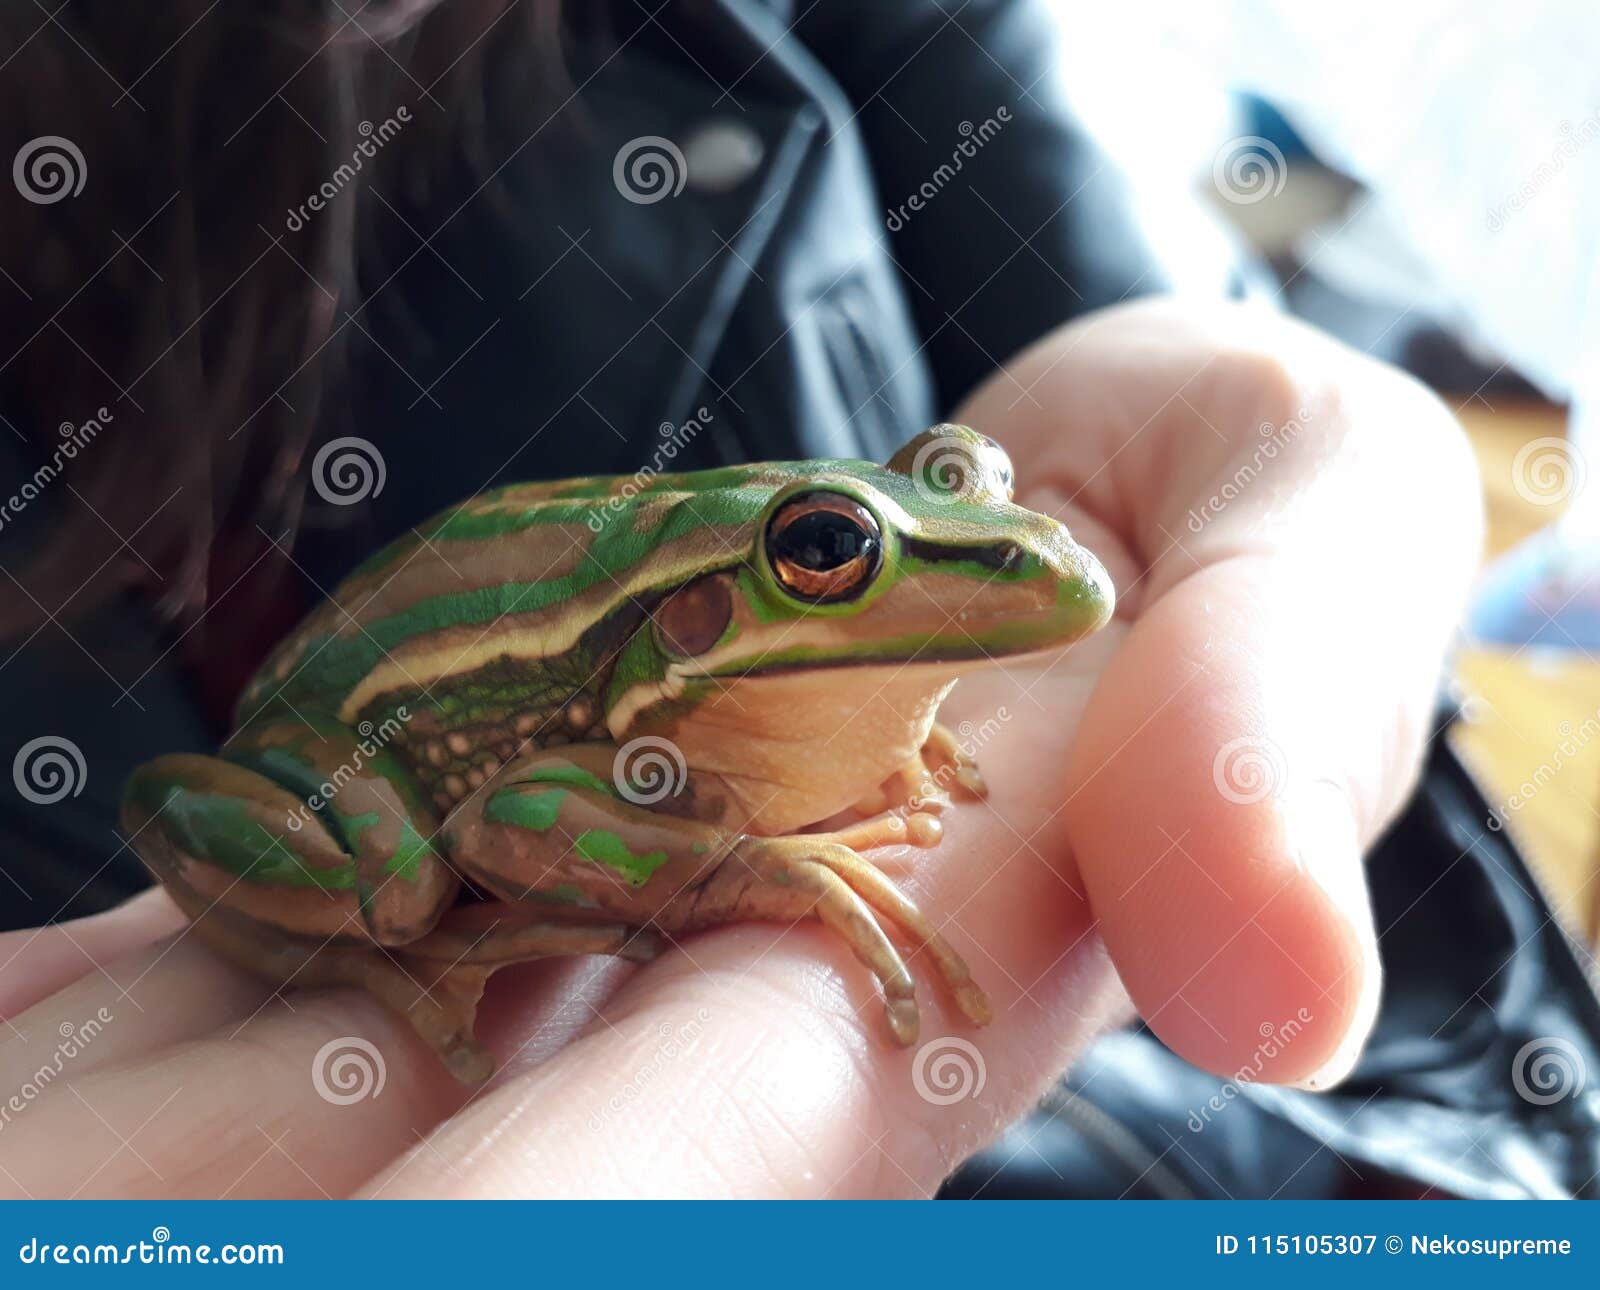 globally threatened australian frog litorea aurea